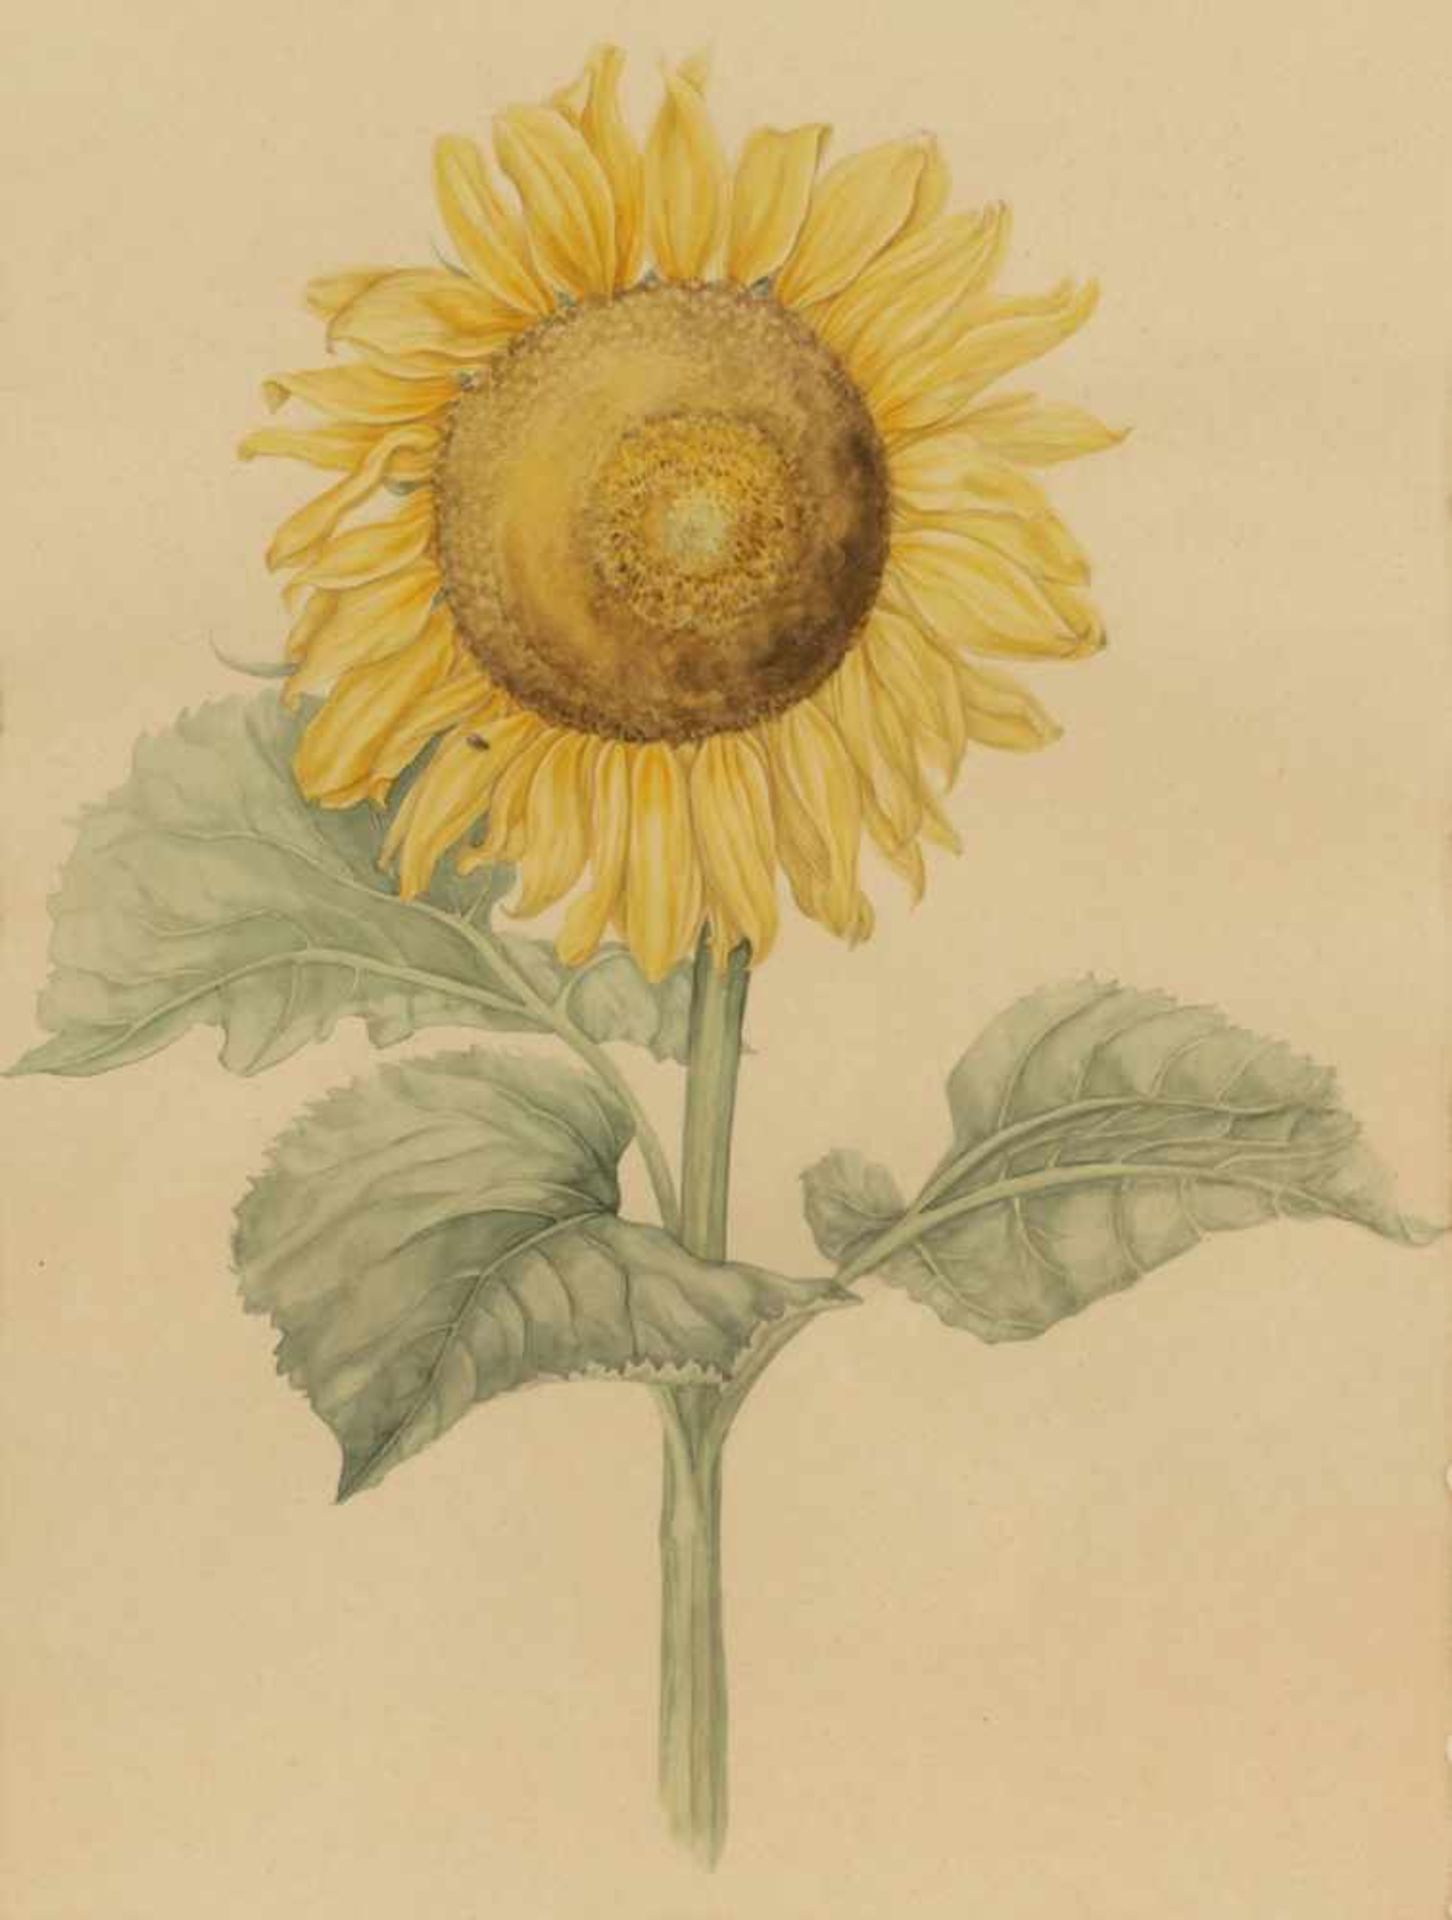 Künstler des 20. Jahrhunderts- "Sonnenblume" - Aquarell/Papier. 56 x 42,5 cm (